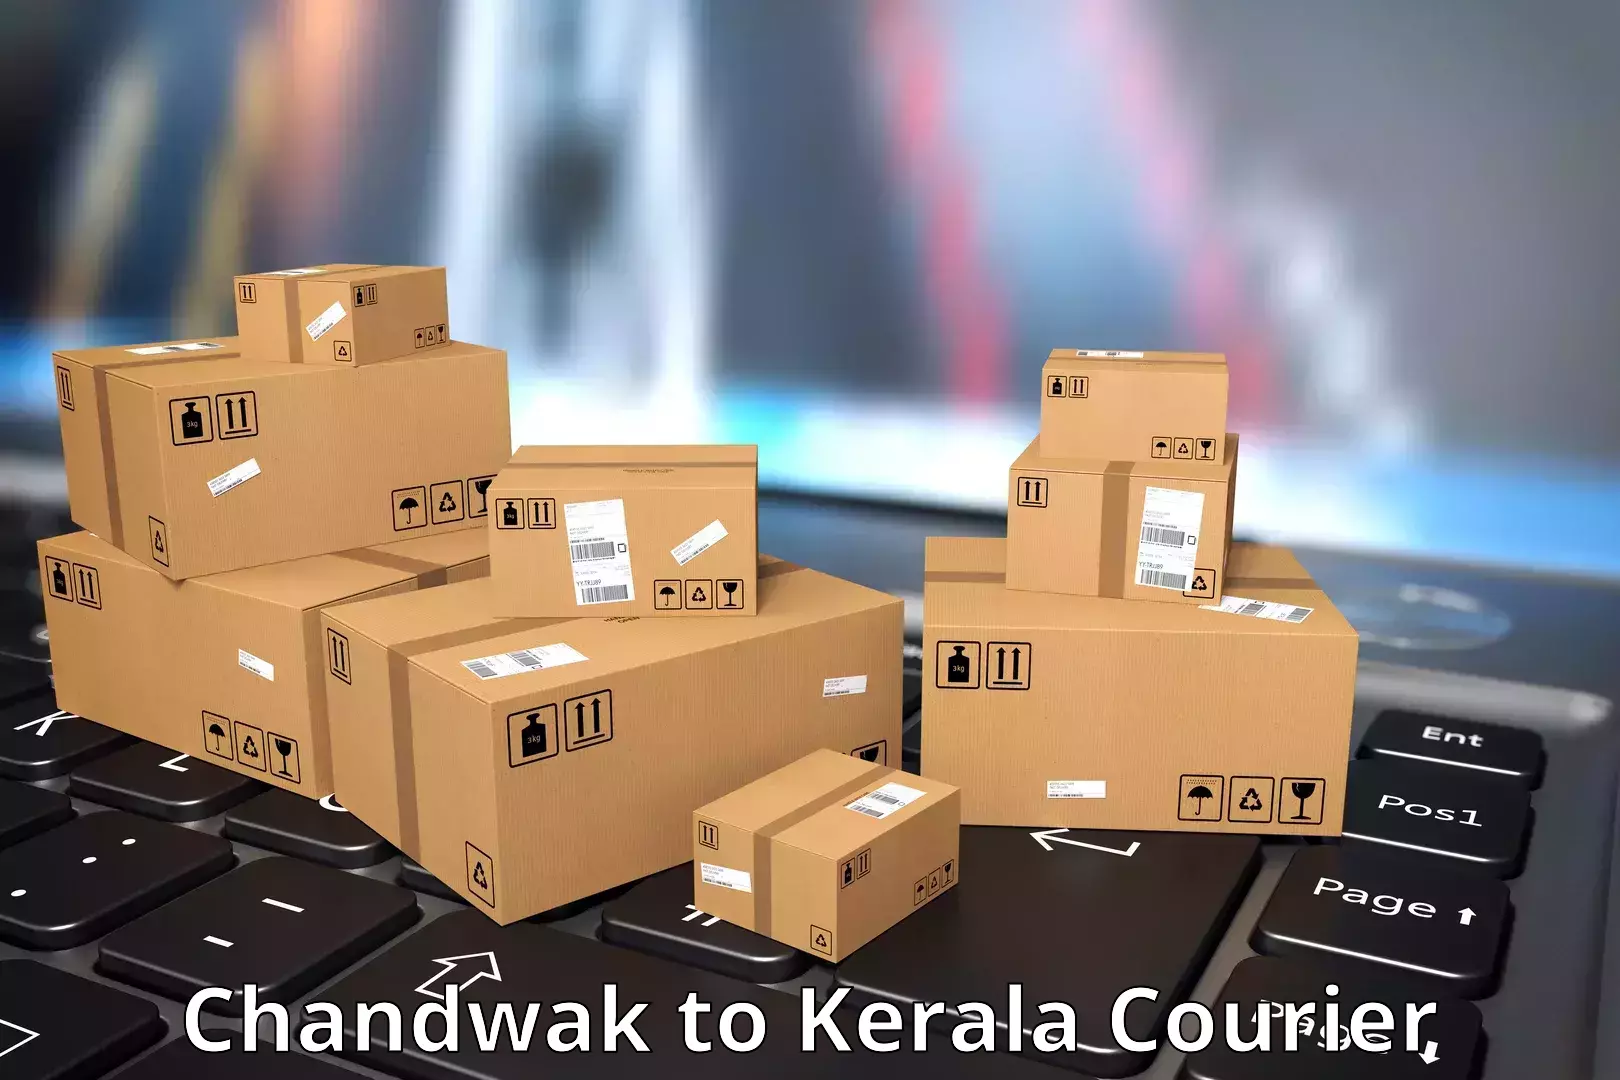 Nationwide parcel services Chandwak to Mundakayam